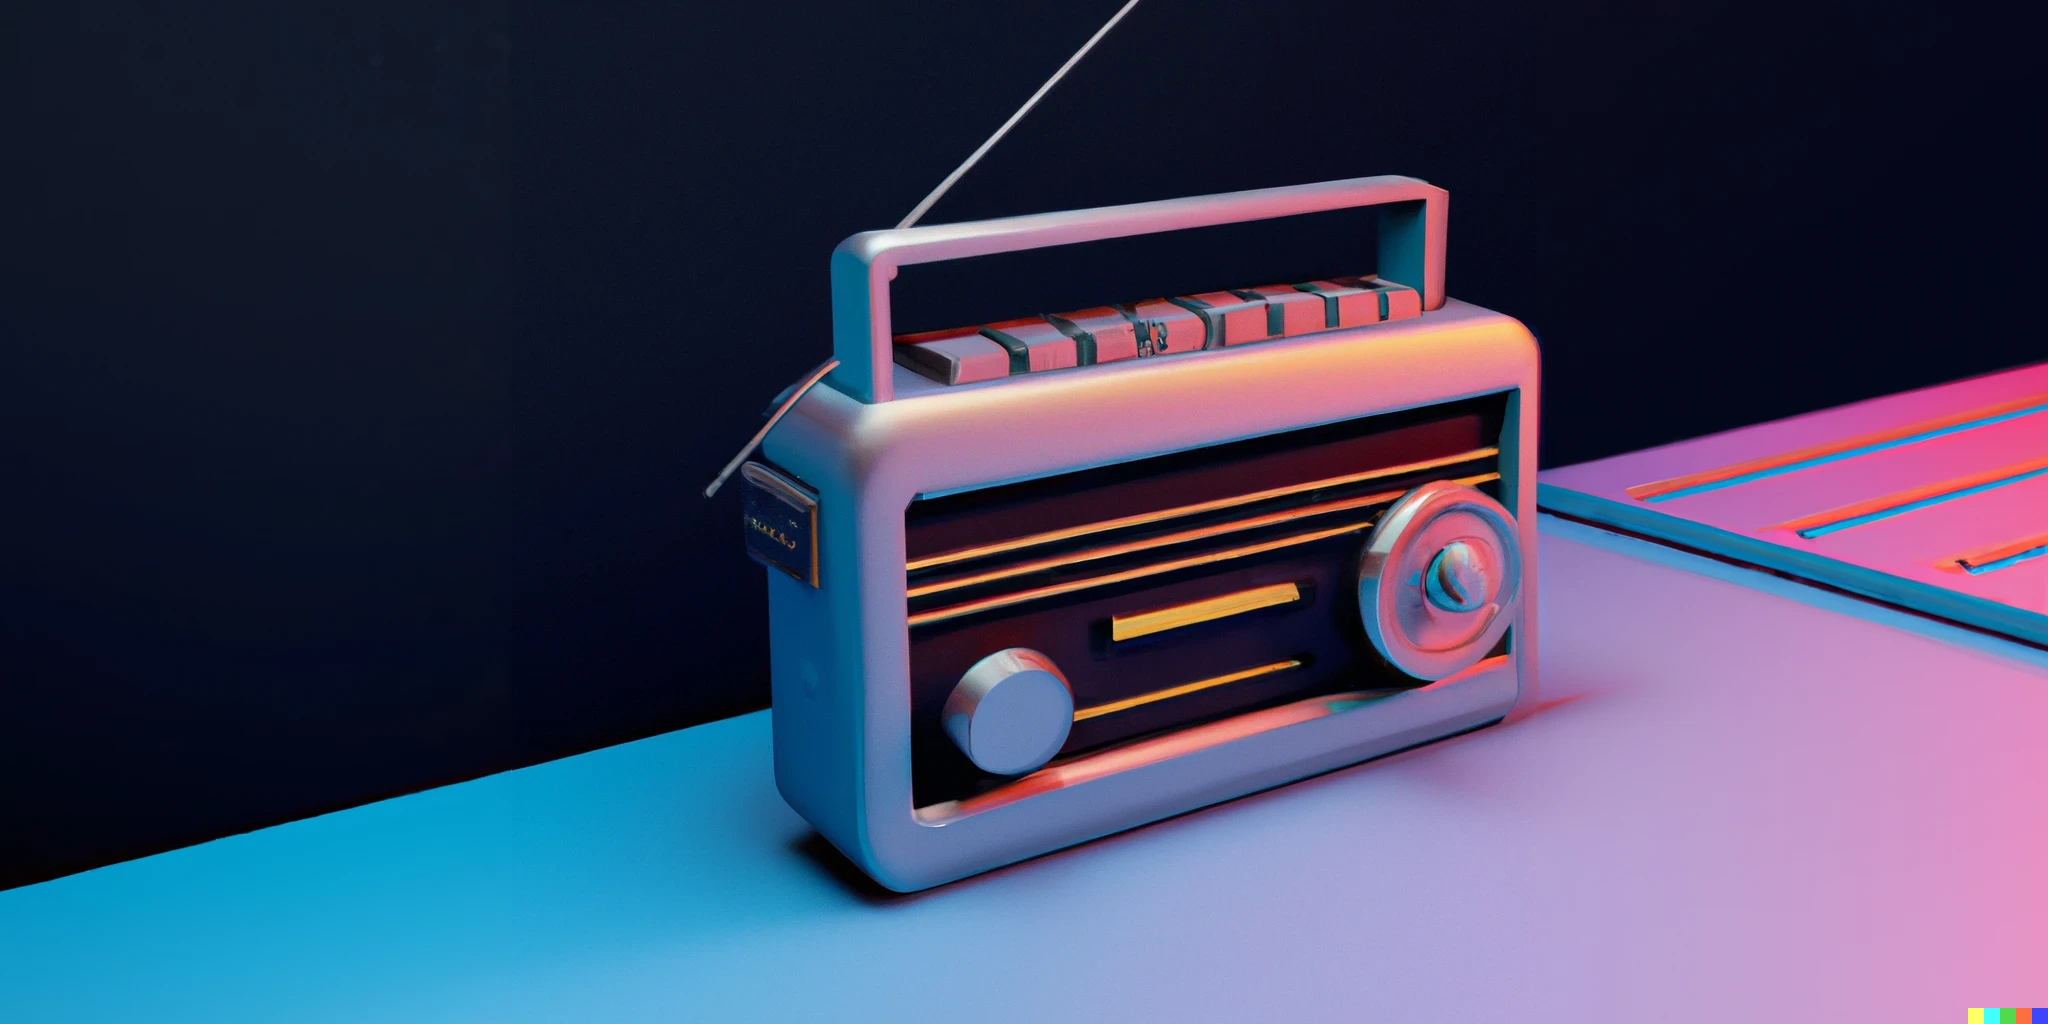 dall-e 2 generated image of a retro-futuristic 3d illustration of a radio tuner